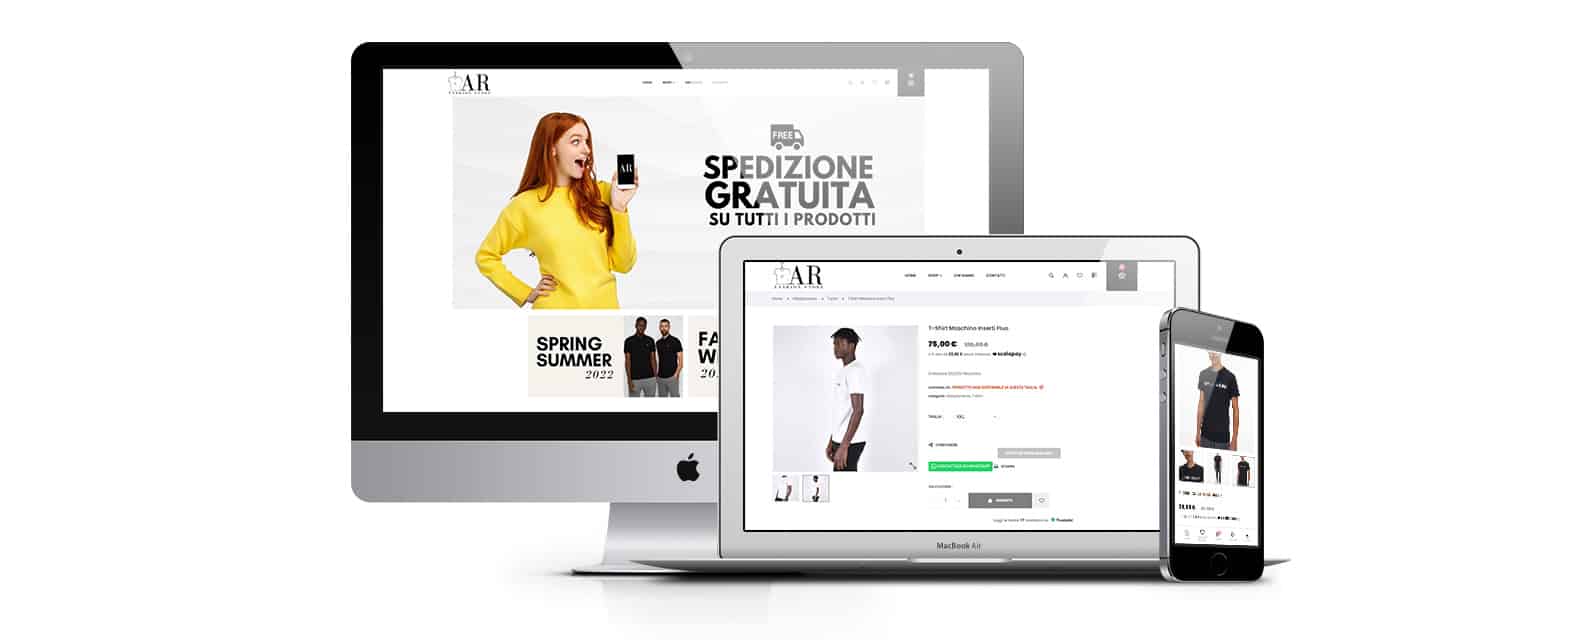 aerre arfashionstore negozio abbigliamento napoli - Ecommerce abbigliamento uomo,donna, | AERRE Fashion Store - Web Agency Napoli Flashex